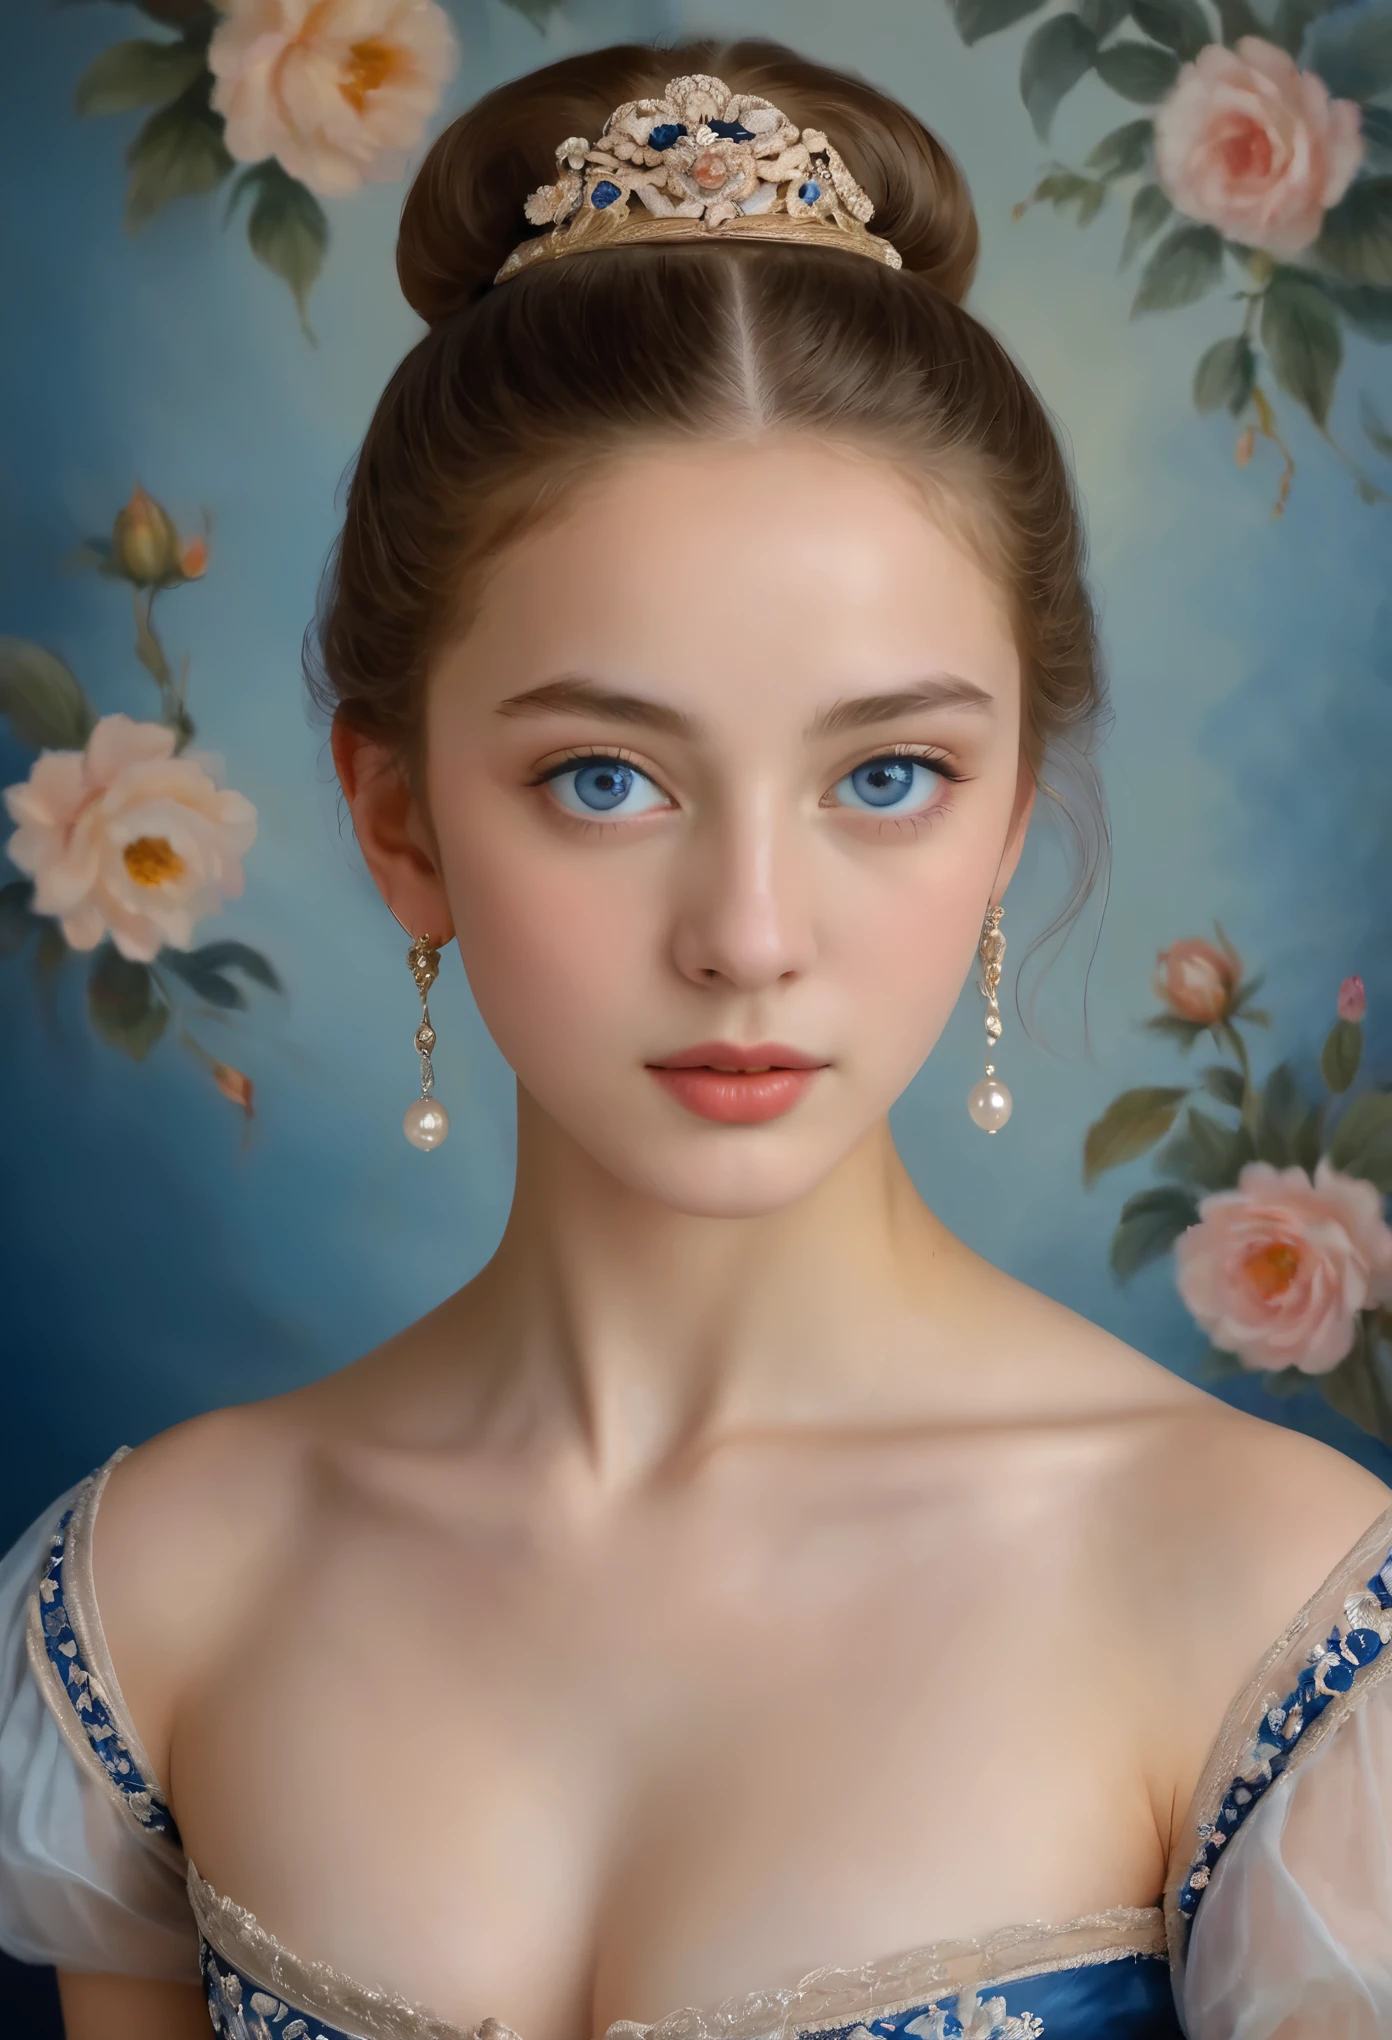 (高解像度,傑作:1.2),(現実的:1.37)"(最高品質, 高解像度, 超詳細, 現実的),19世紀に描かれた16歳のフランス人バレエダンサーの美しい肖像画, (彼女はフランス人と日本人のハーフです, 濃い青い目と高い鼻を持つ見事な美人です:1.1), 精巧なバレエ衣装, 詳細な顔の特徴, 長く優雅な首, 流れるような髪の束, 落ち着いた優雅な姿勢, 柔らかく繊細な照明, 古典的な油絵の媒体, 鮮やかな色彩, 花のモチーフが描かれた繊細な背景", 夢のような雰囲気, シュルレアリスム,神秘的なオーラ